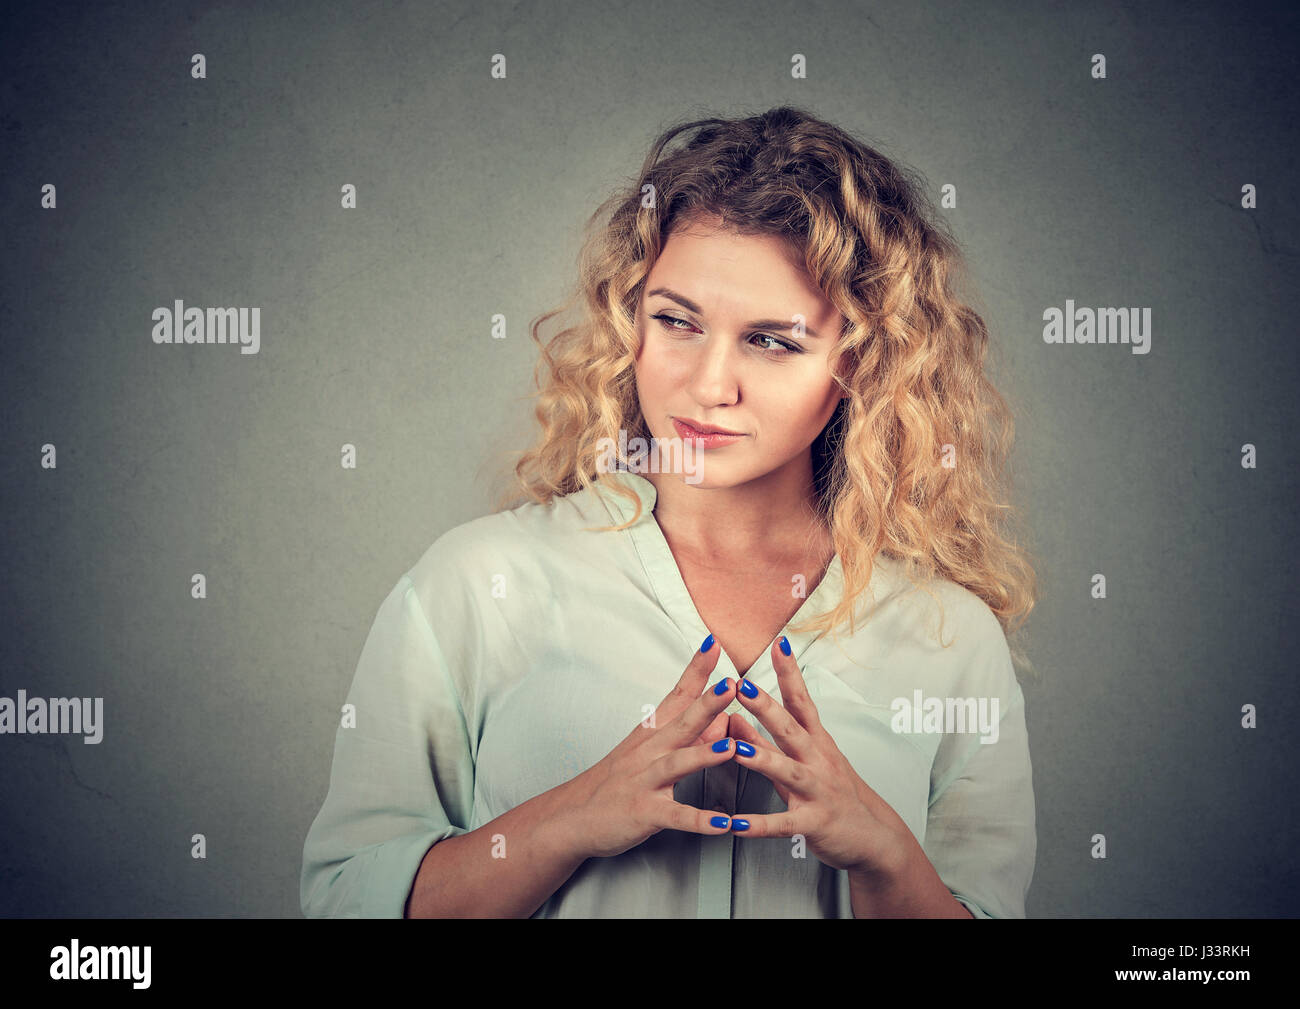 Closeup Portrait hinterhältig, sly, intriganten jungen Frau Plotten etwas isoliert auf grauem Hintergrund. Negative Emotionen, Mimik, Gebühr Stockfoto